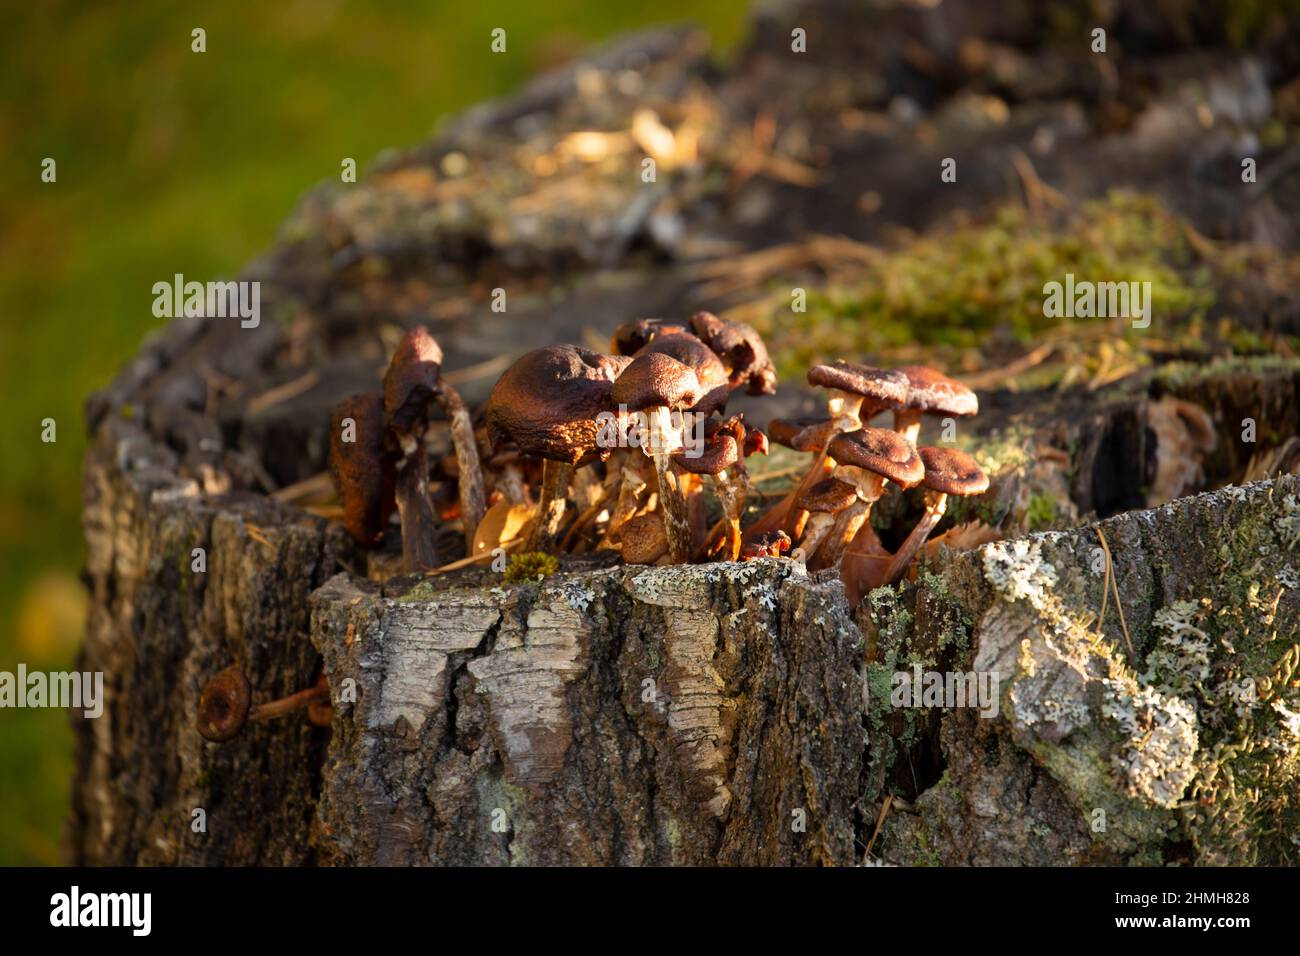 Mushrooms grow in a birch stump, autumn scene Stock Photo